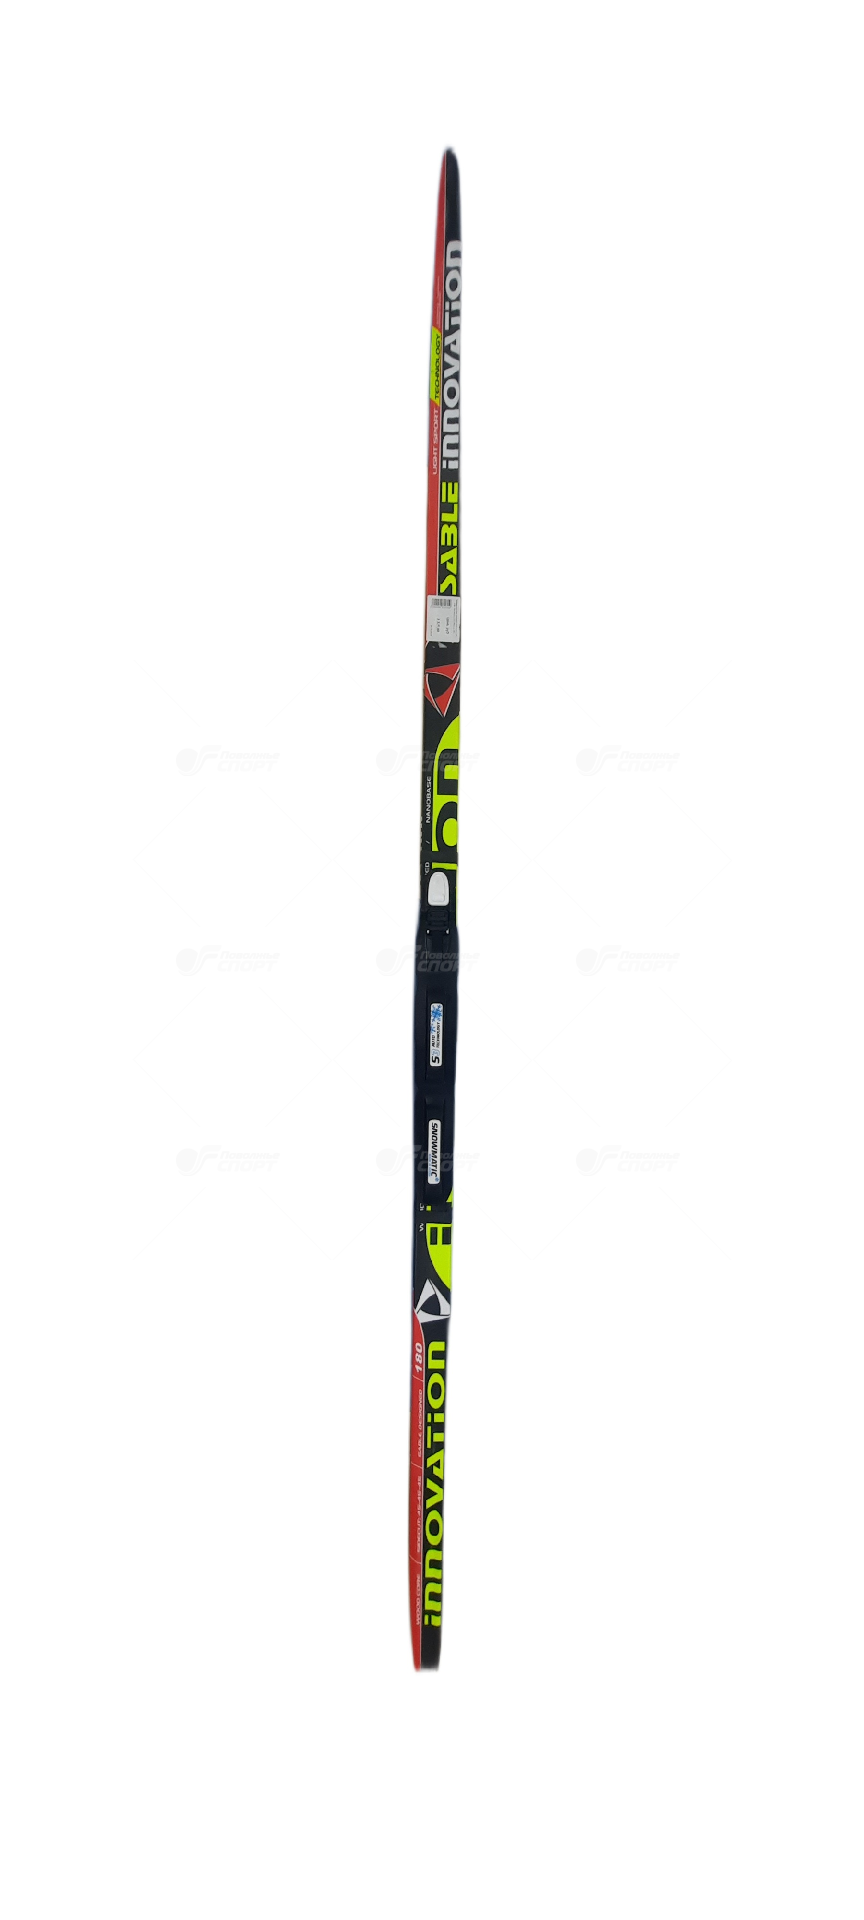 Лыжный комплект крепления SNS Active STC степ, без палок р.150-205см